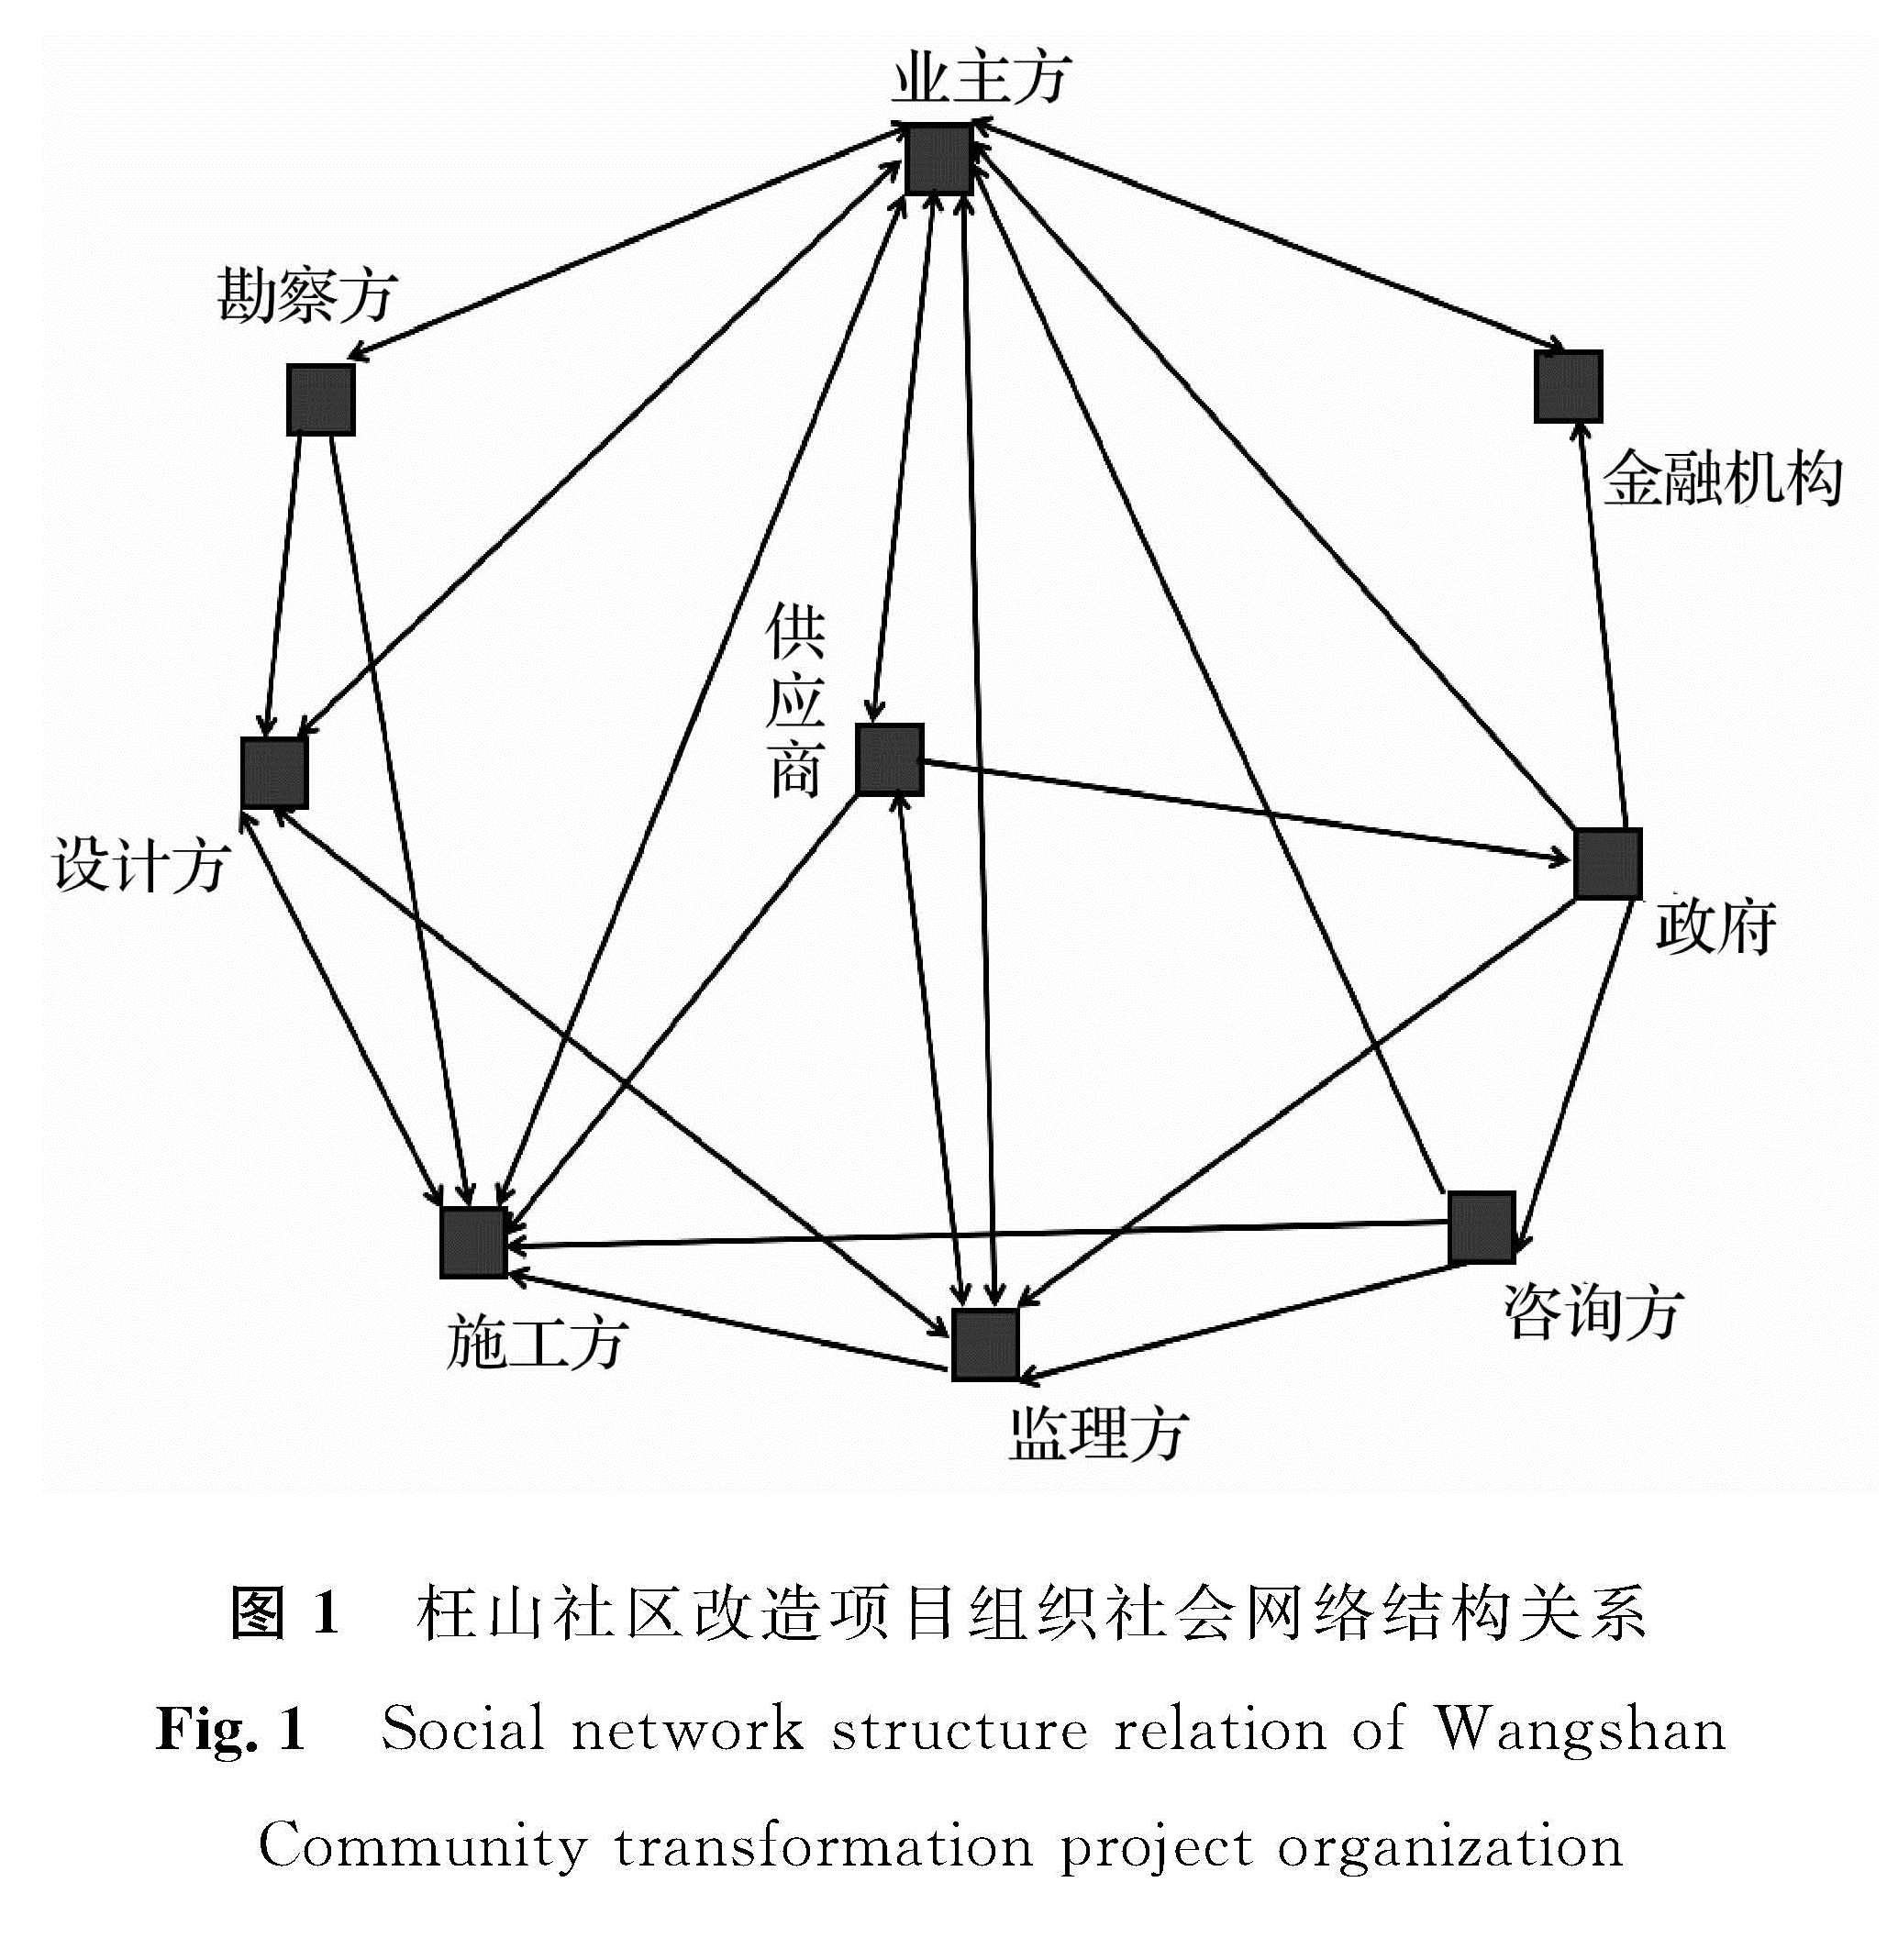 图1 枉山社区改造项目组织社会网络结构关系<br/>Fig.1 Social network structure relation of Wangshan Community transformation project organization